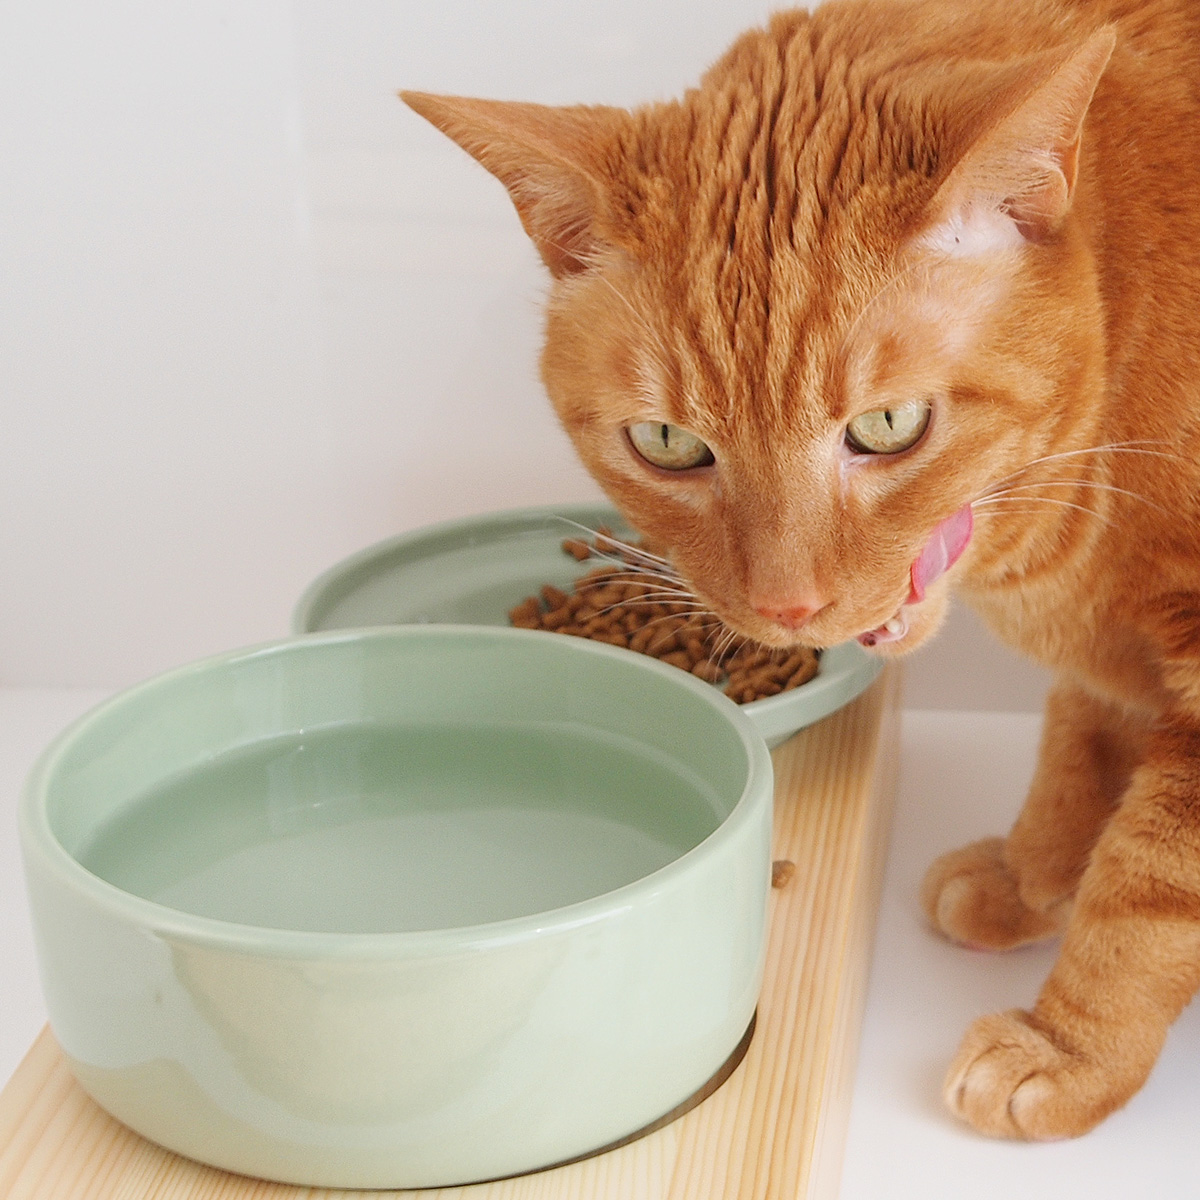 Кормить котенка домашней едой. Еда для котят. Кормление кошек. Корм для кошек. Натуральная еда для кота.